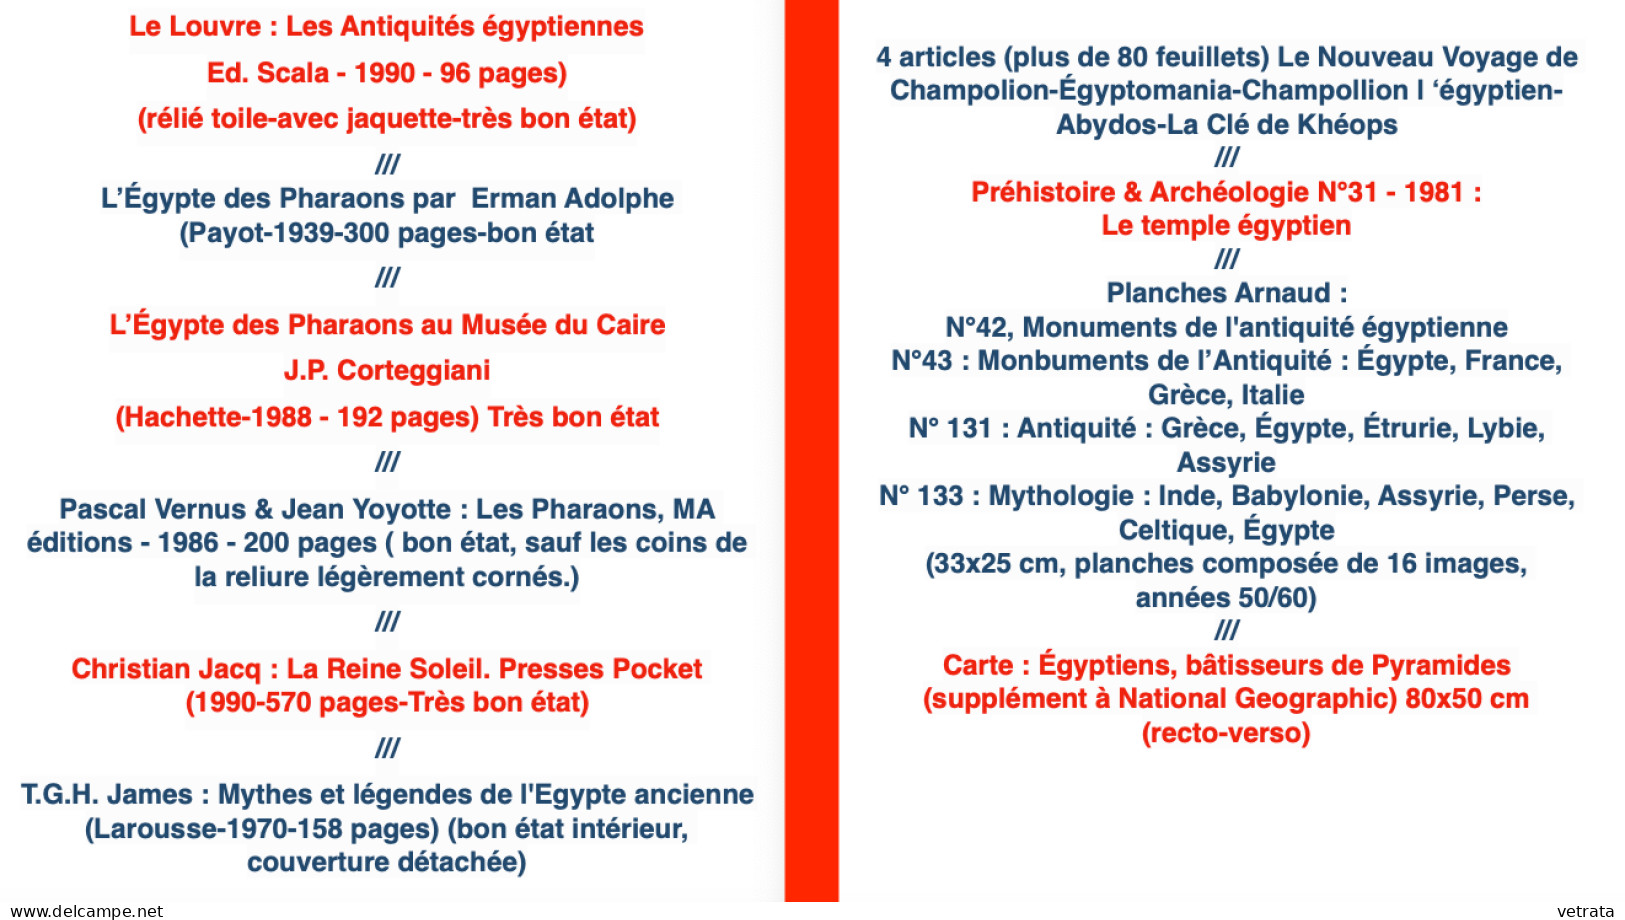 ÉGYPTE ANCIENNE/PHARAONS : 6 Livres - 1 Magazine - 4 Planches Arnaud & 1 Carte + 4 articles (plus de 80 feuillets) /// (